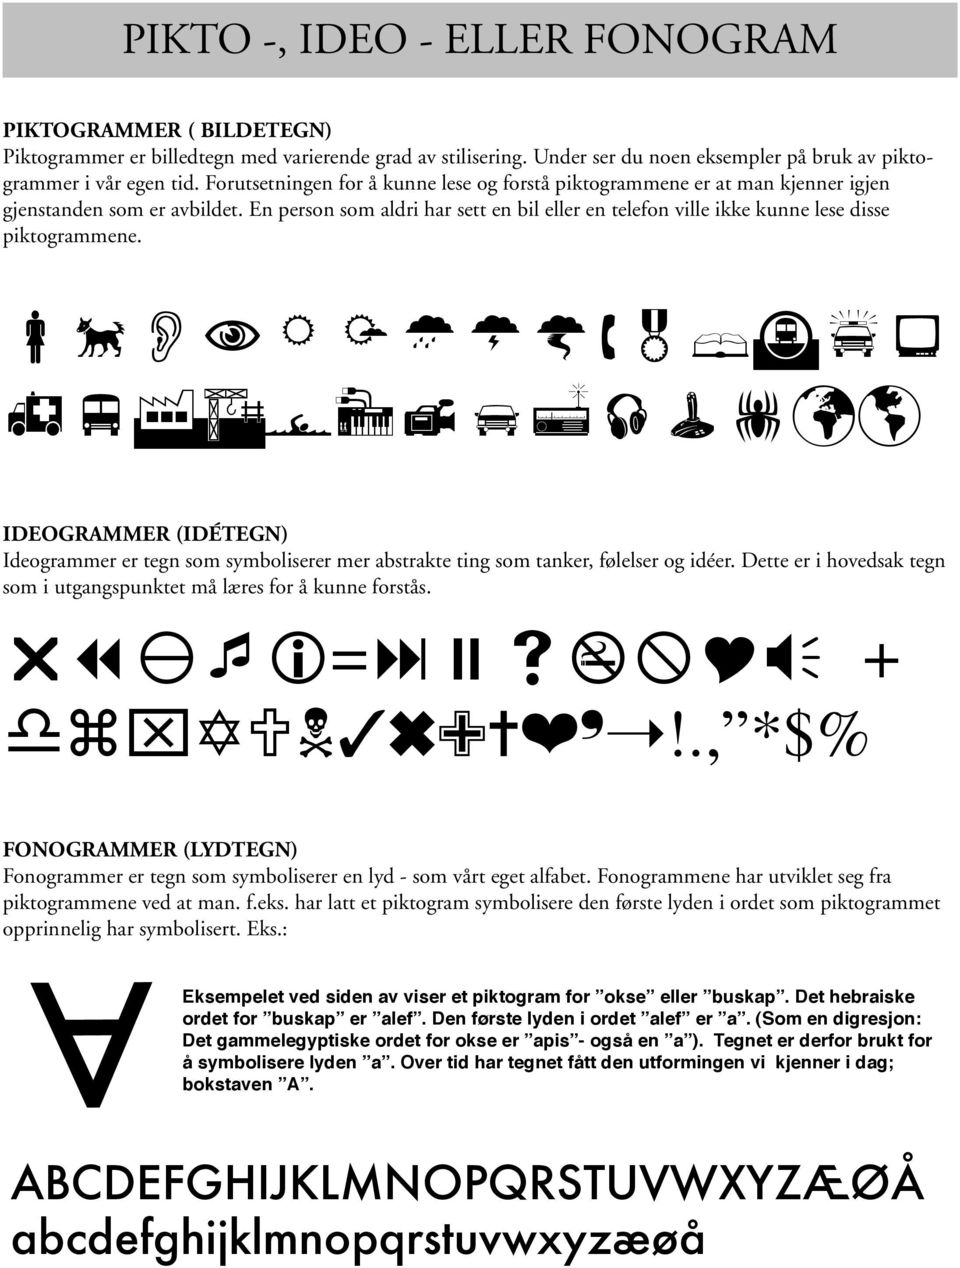 En person som aldri har sett en bil eller en telefon ville ikke kunne lese disse piktogrammene. ÅıON &ßupæ hvfaä πéª!